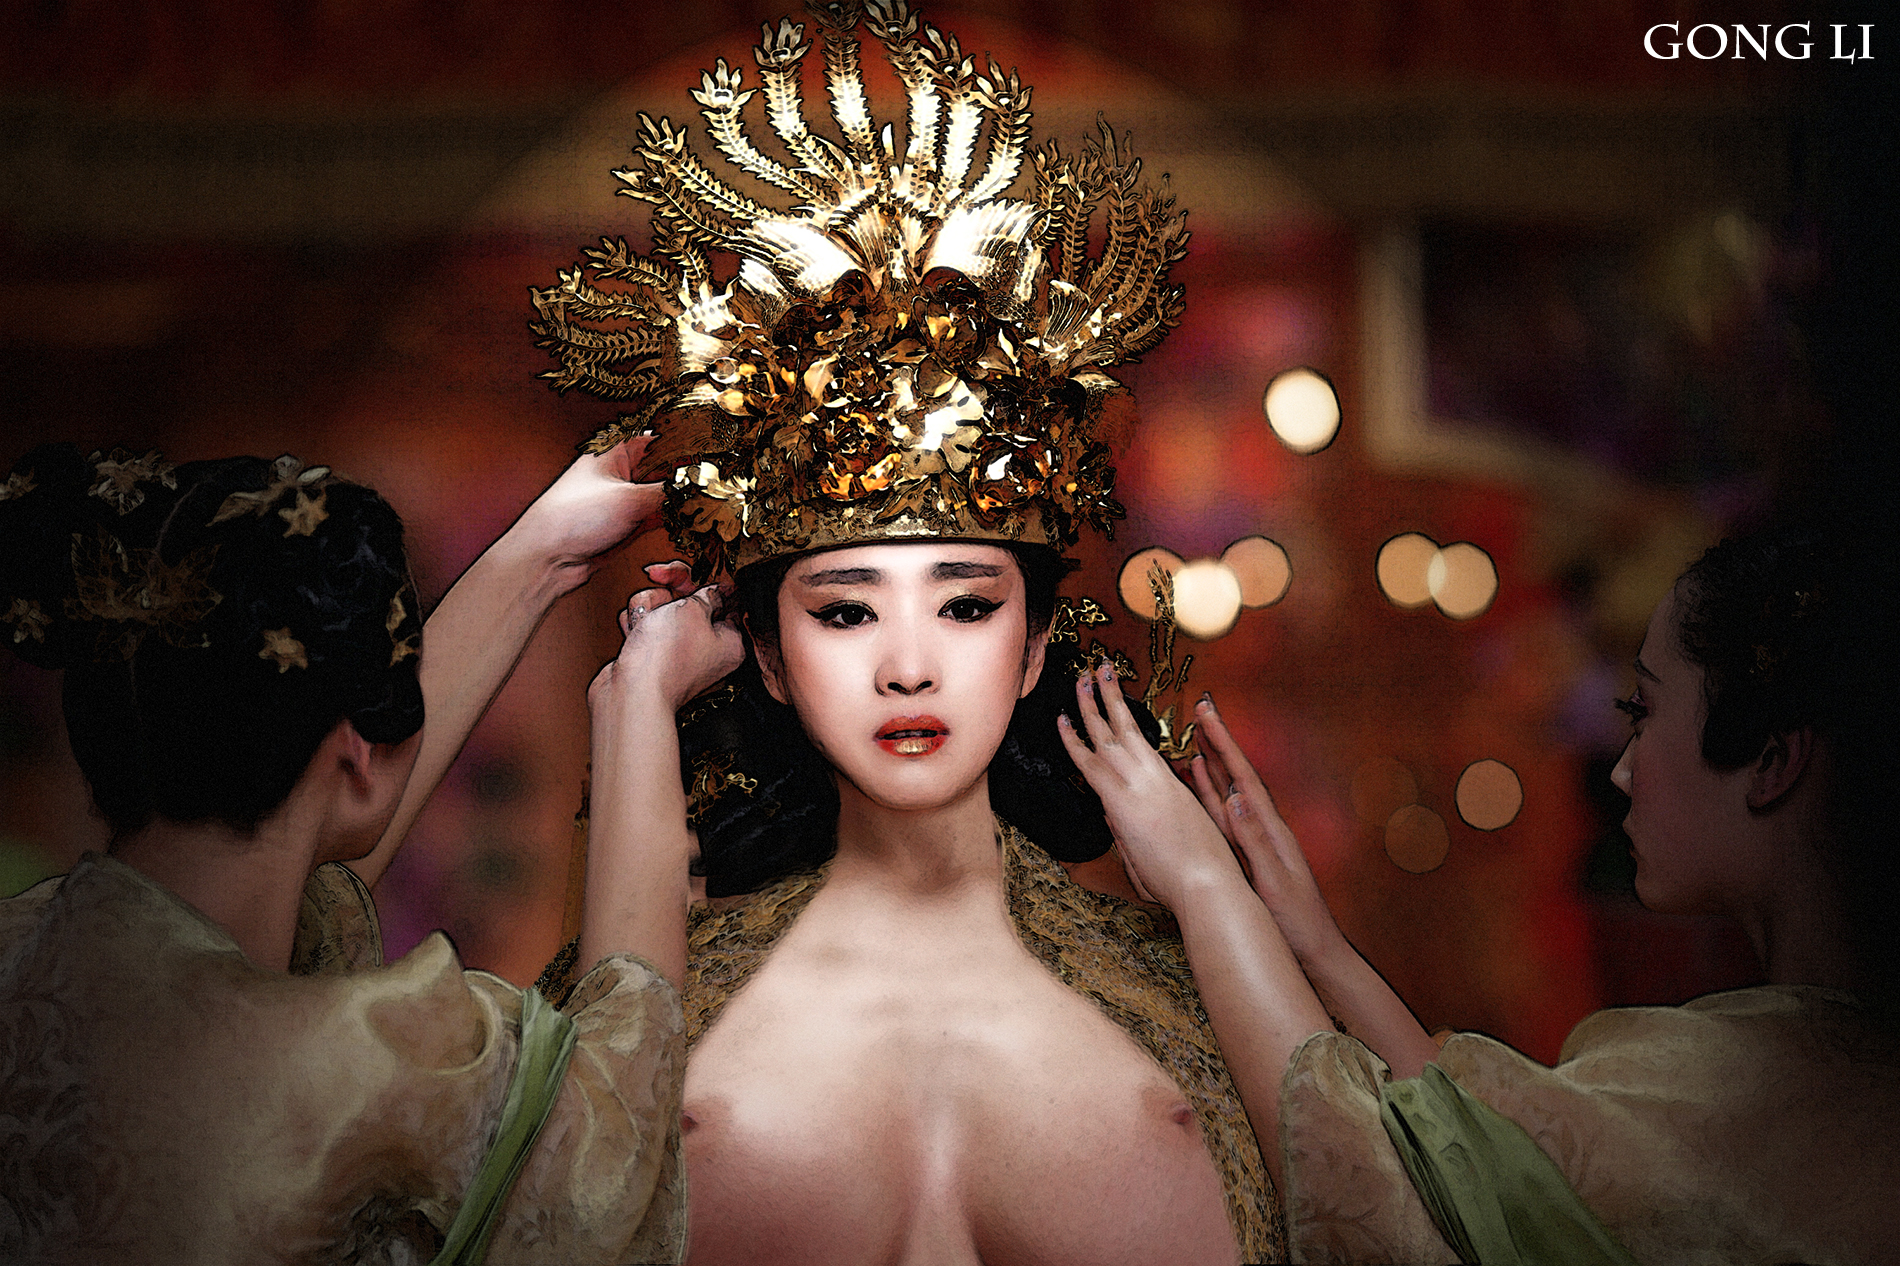 Li Gong Nude.